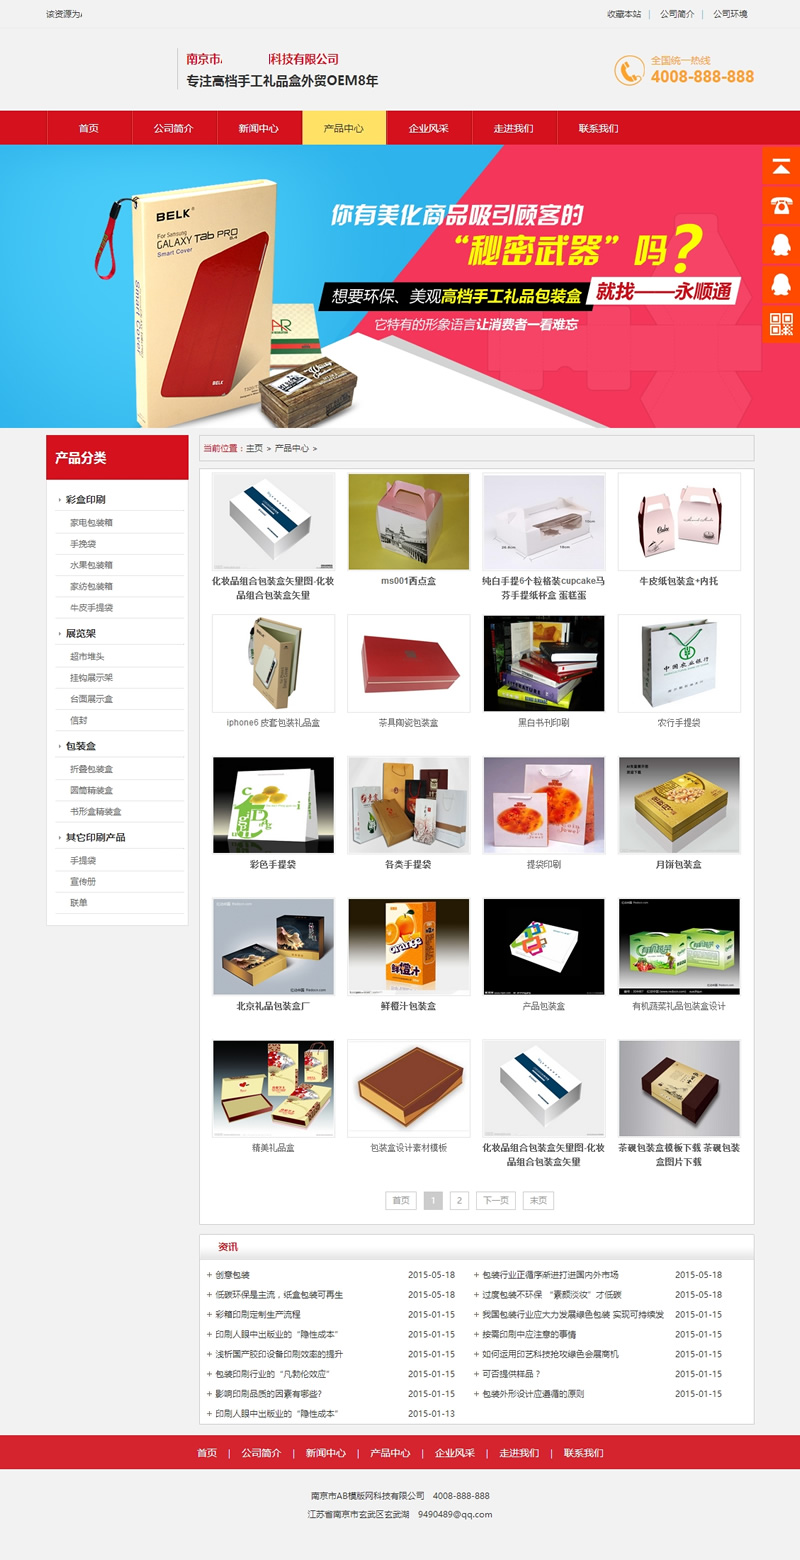 包装印刷营销网站源码 高端大全营销型印刷纺织企业dedecms模版插图1